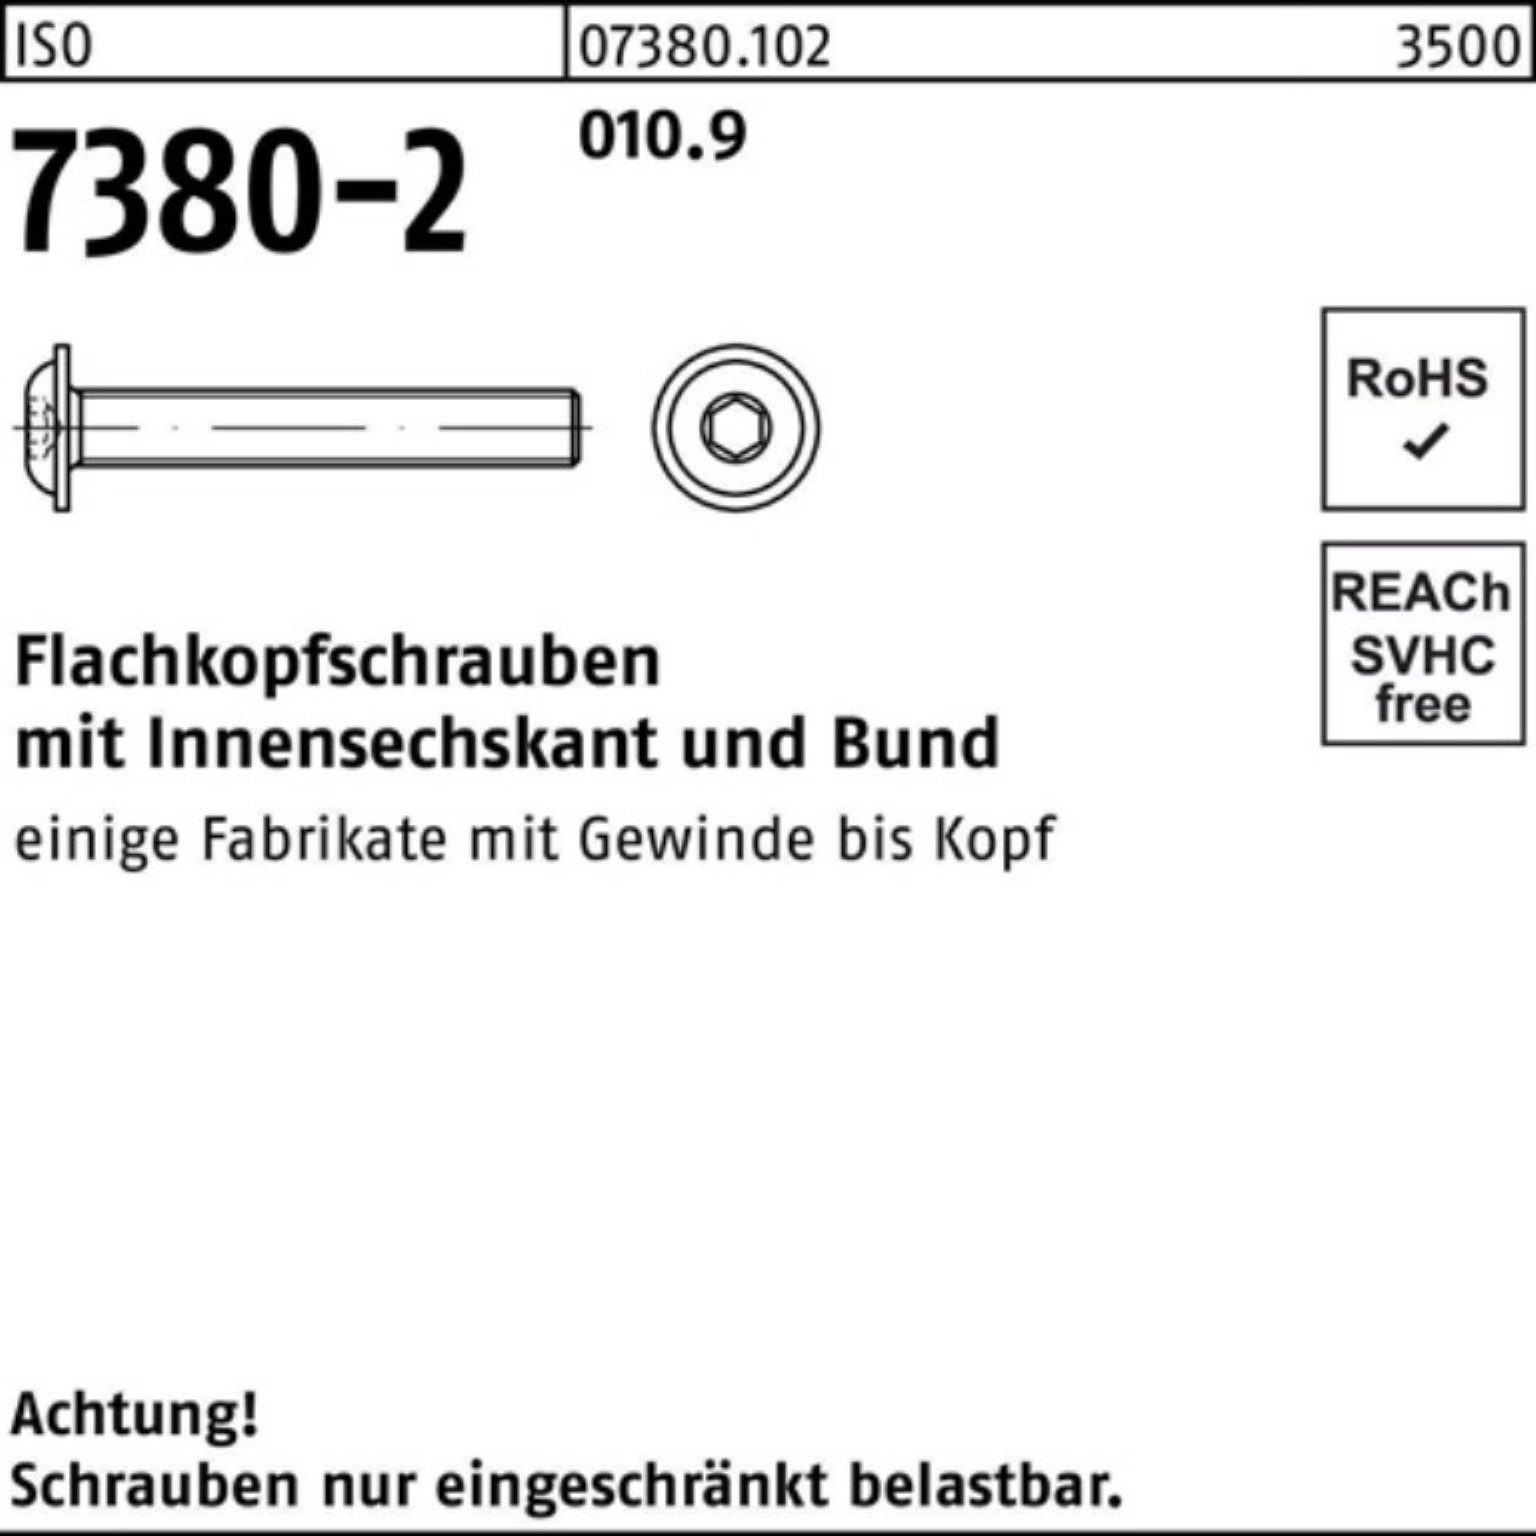 Reyher Schraube 200er Pack Flachkopfschraube 7380-2 20 010.9 35 ISO M5x Bund/Innen-6kt